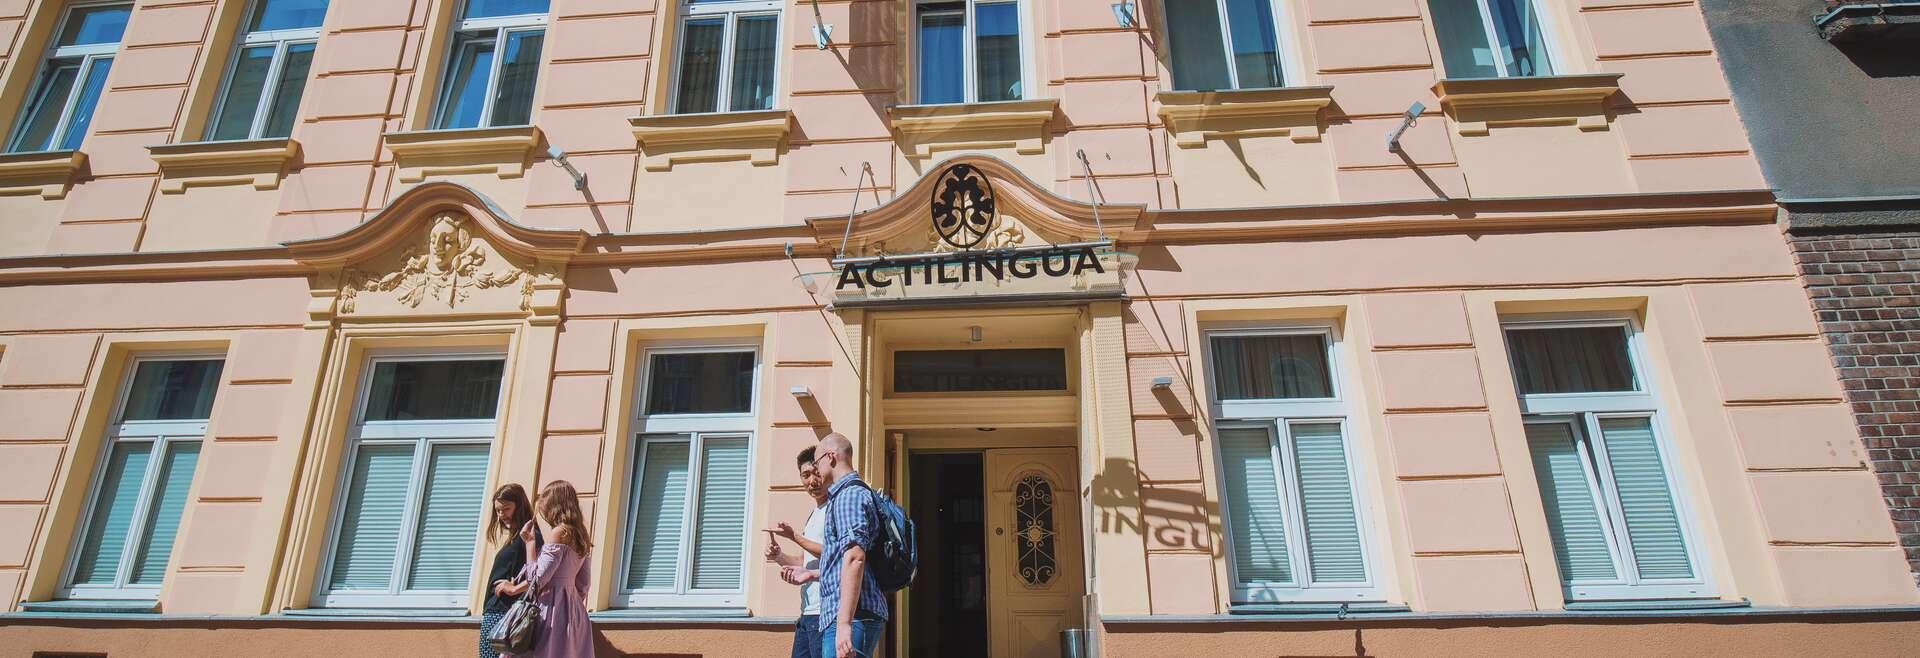 Sprachaufenthalt Österreich, Wien, ActiLingua Academy Vienna, Gebäude